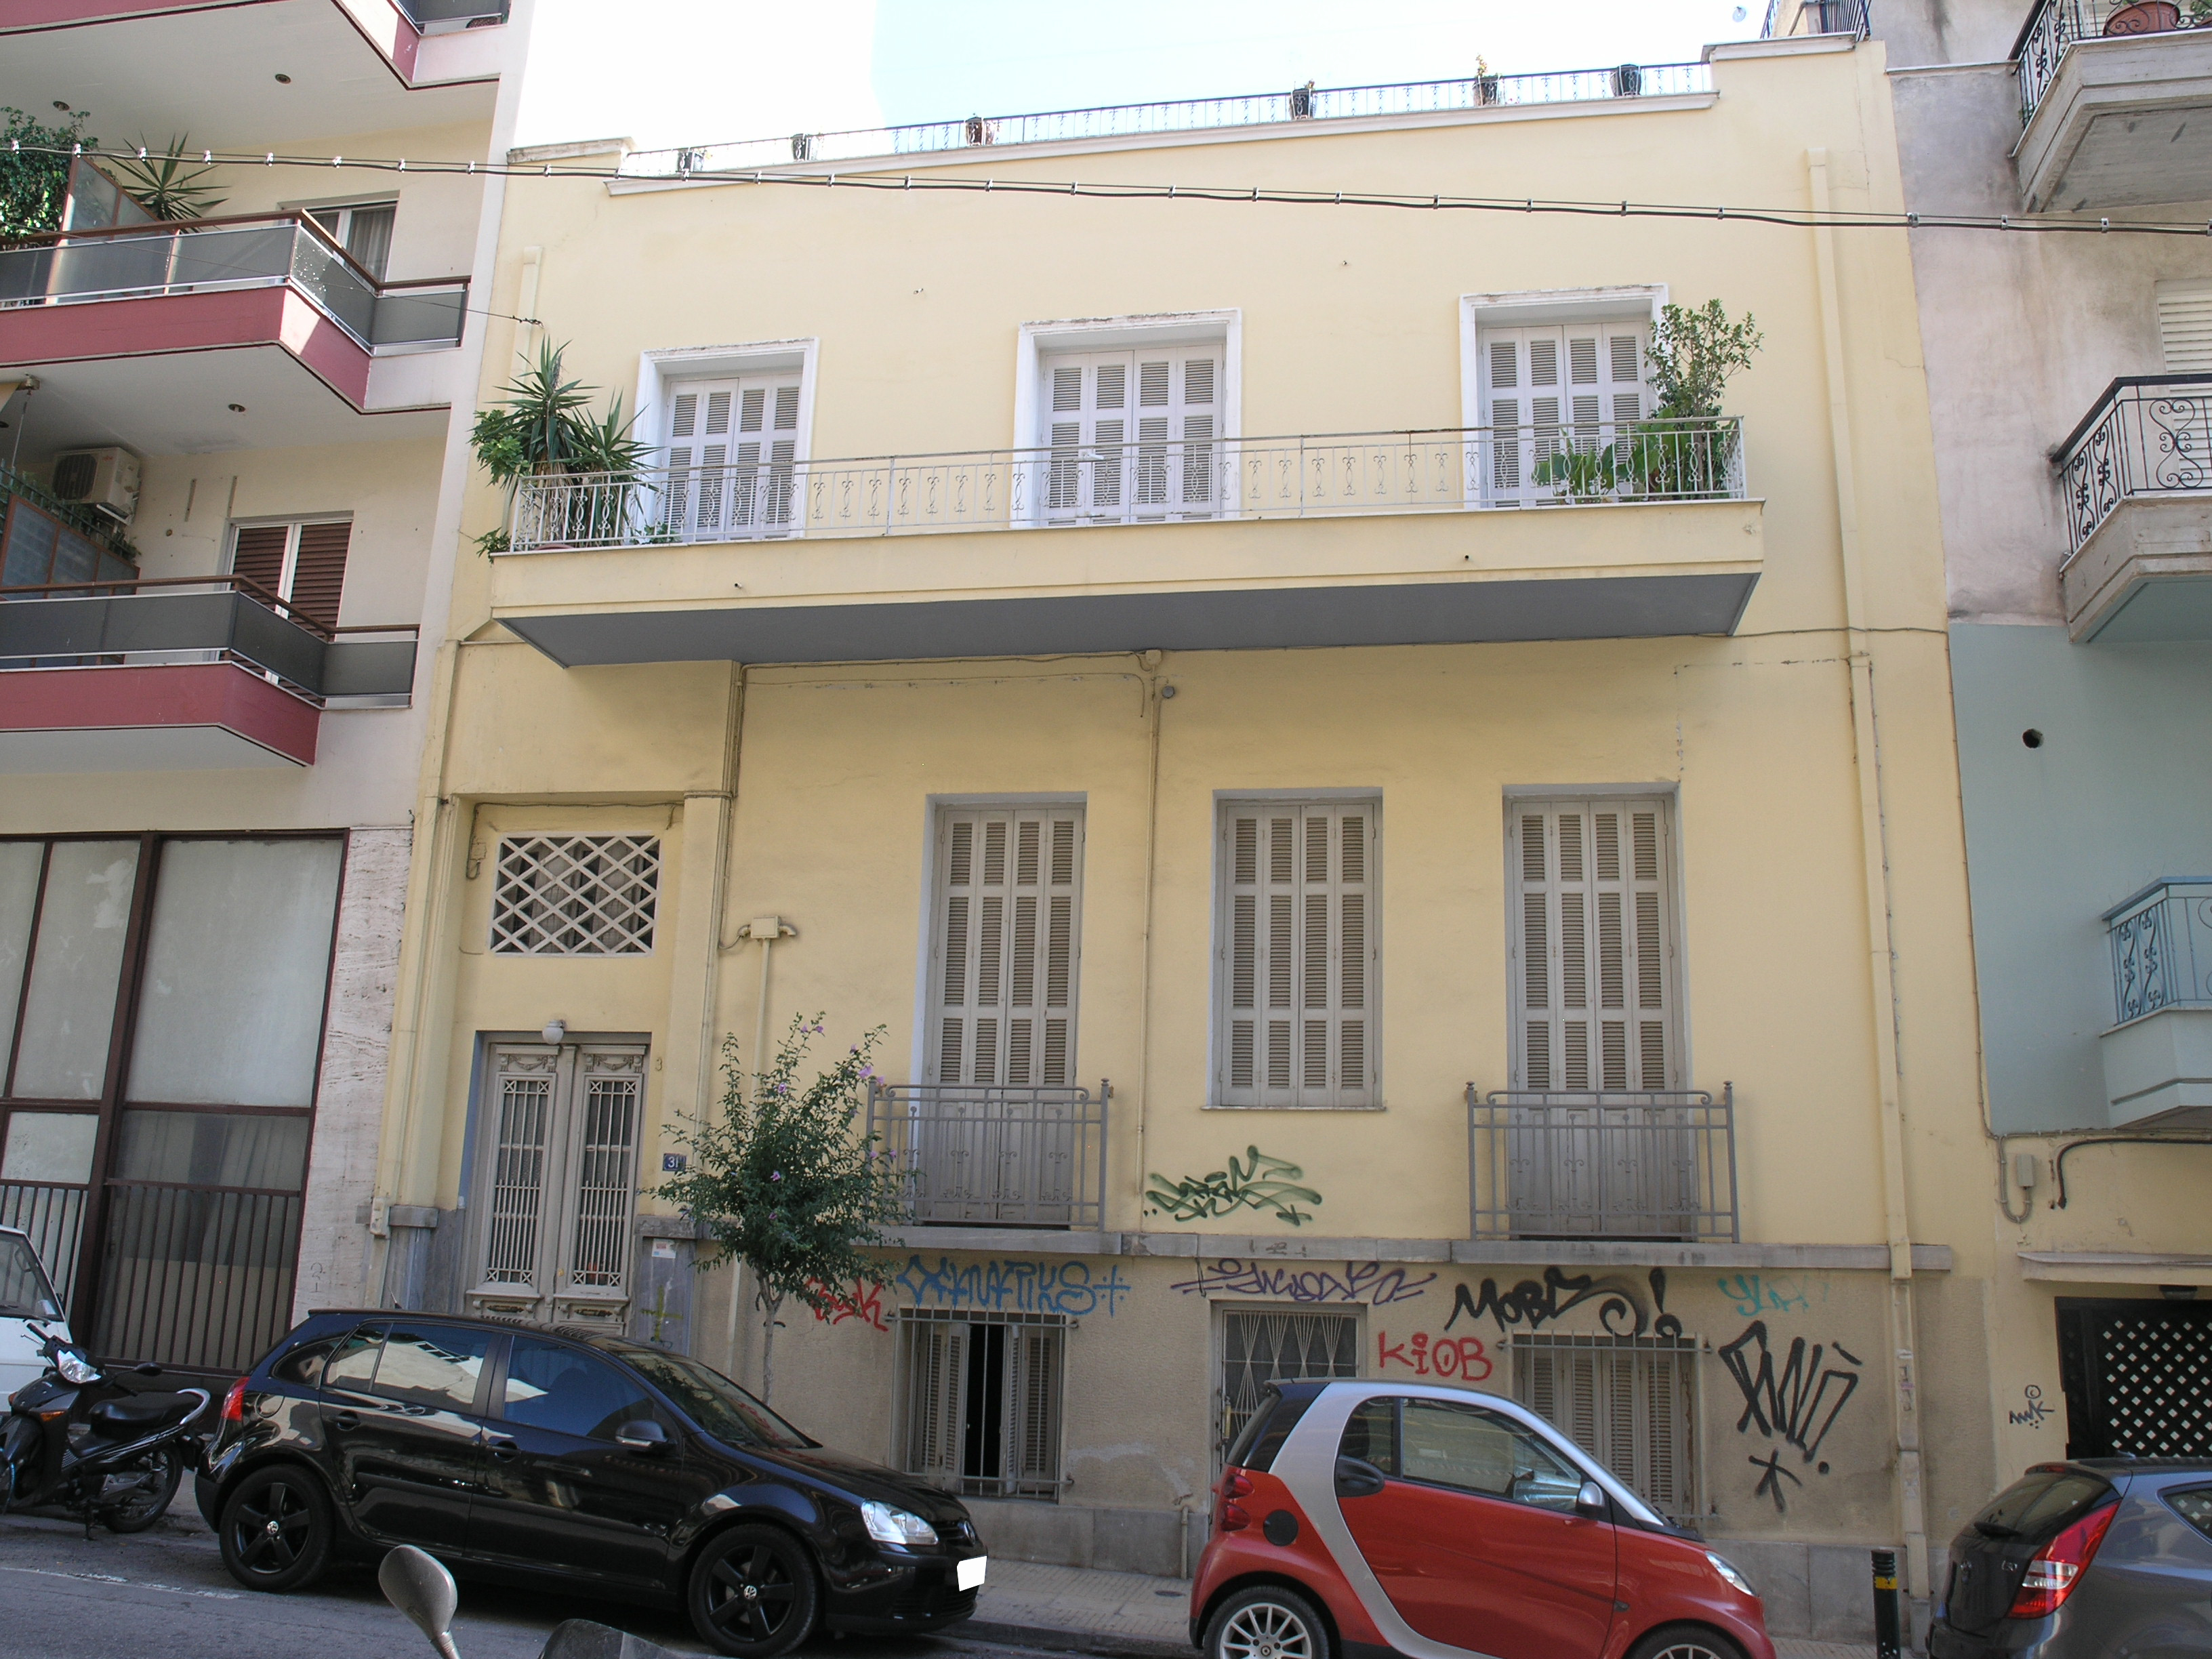 View of the main façade (2015)